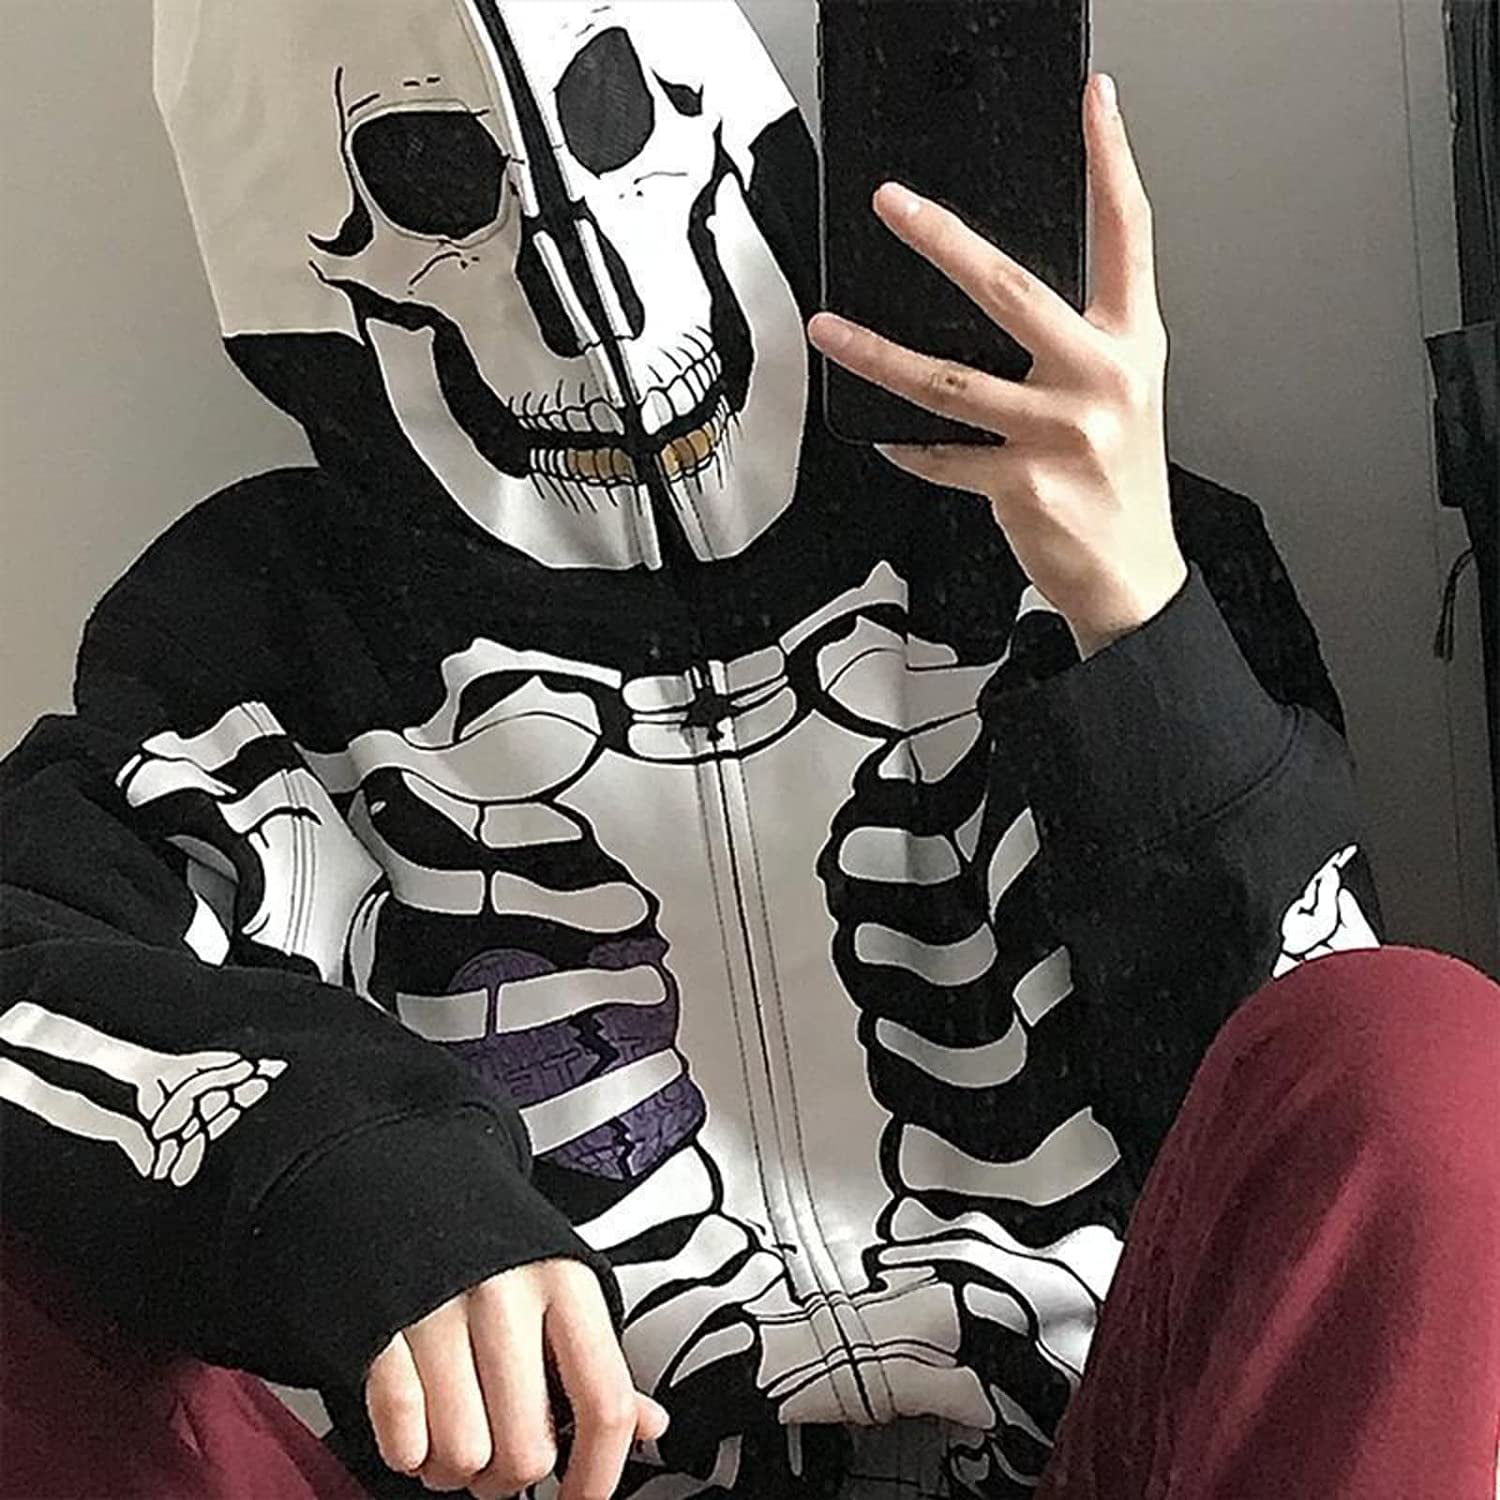 Skeleton hoodie rust фото 89